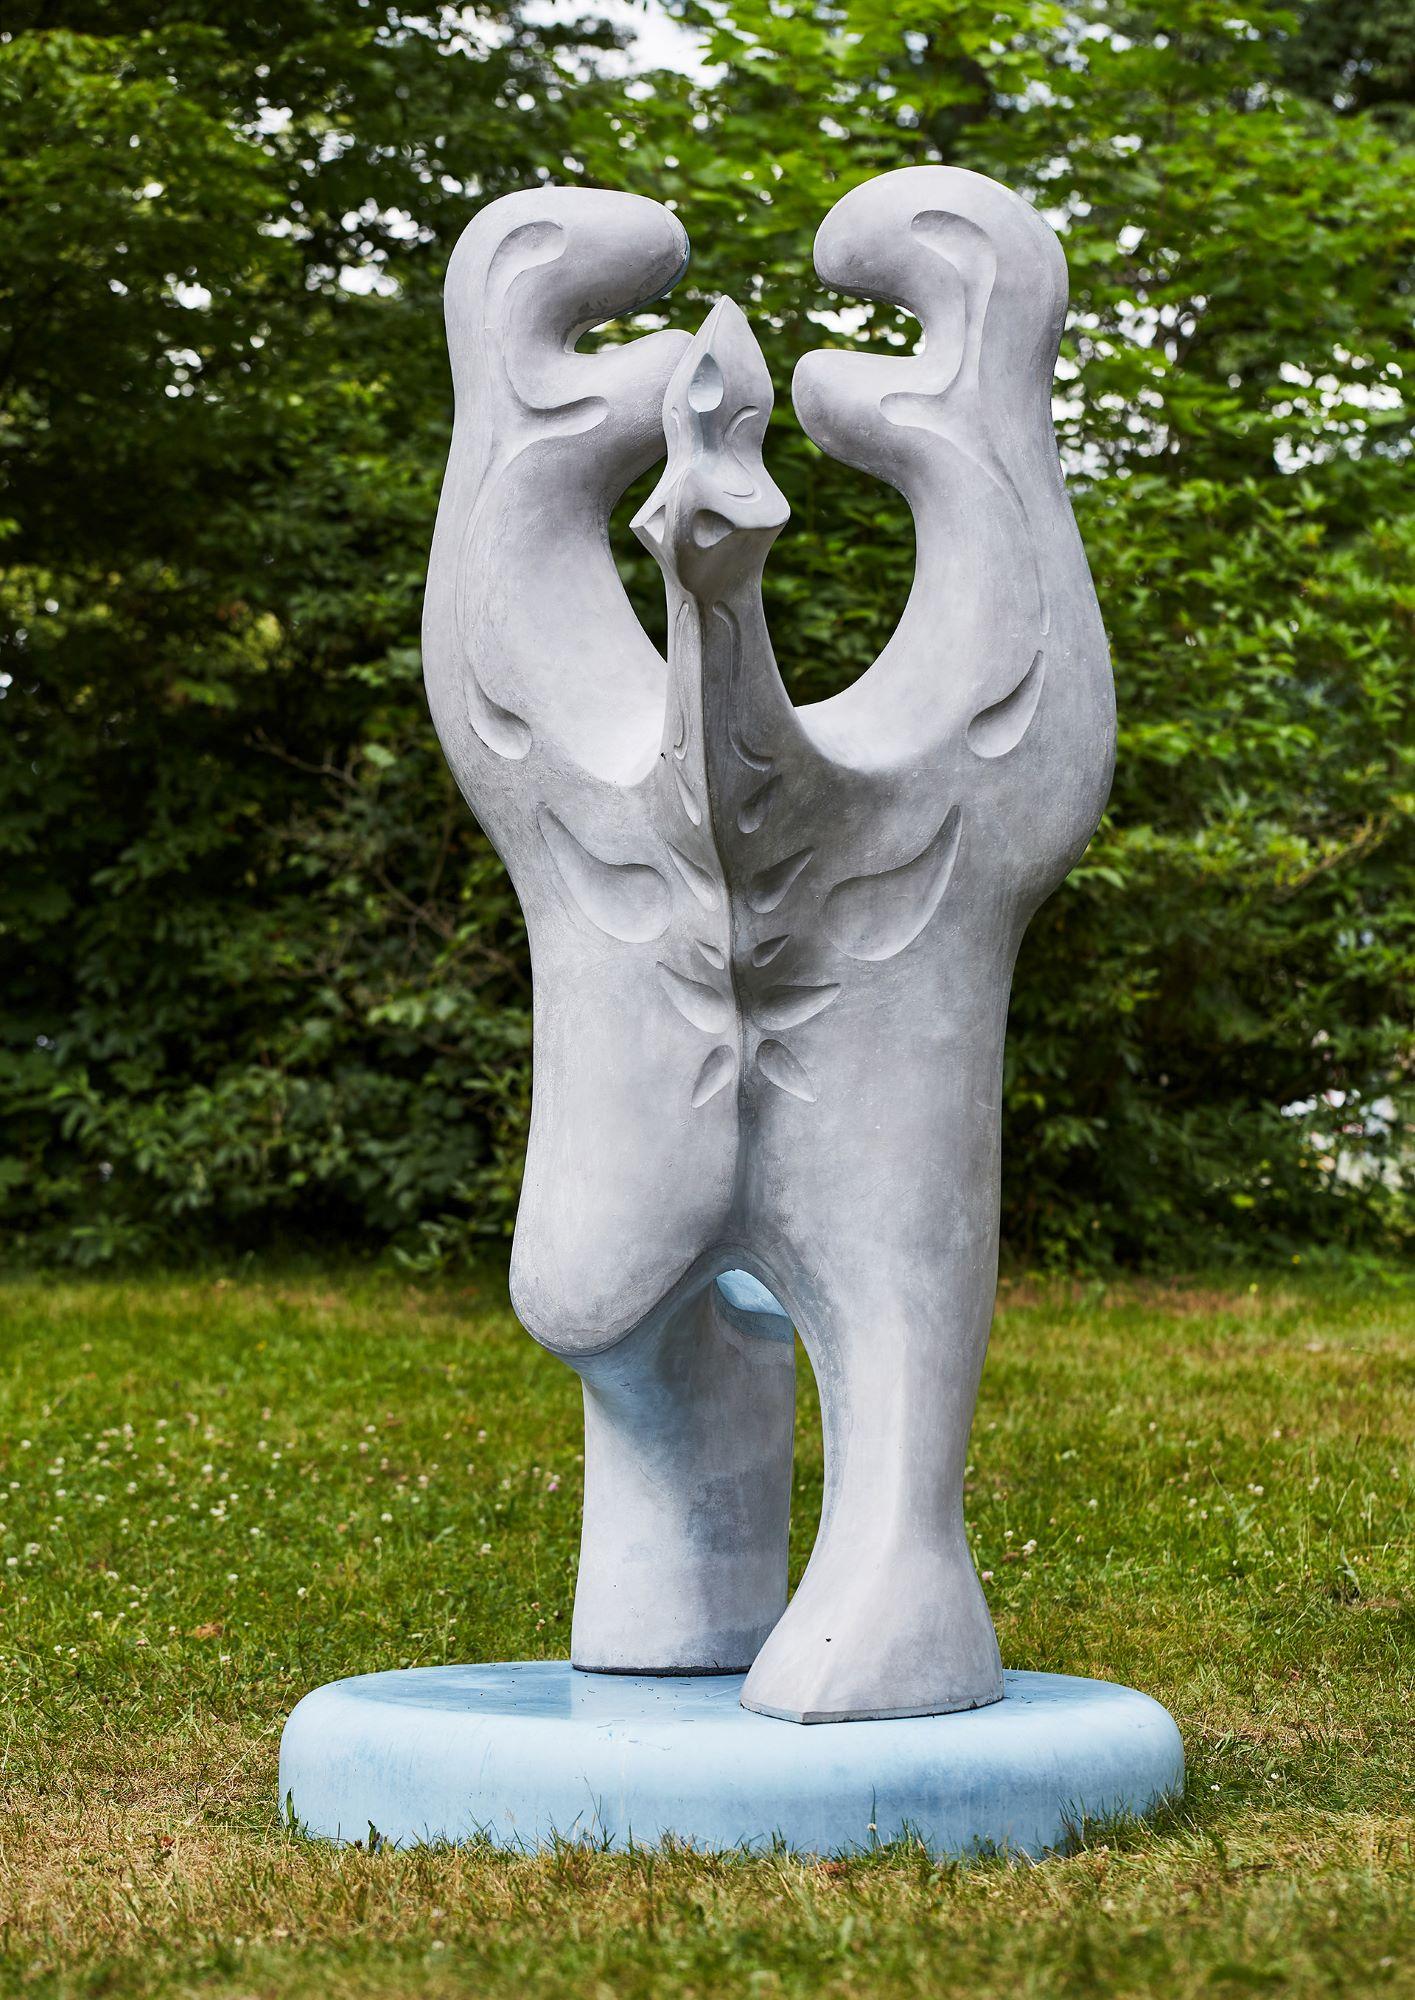 Big Creature by Pavlína Kvita - Contemporary sculpture, futuristic figure, grey For Sale 7